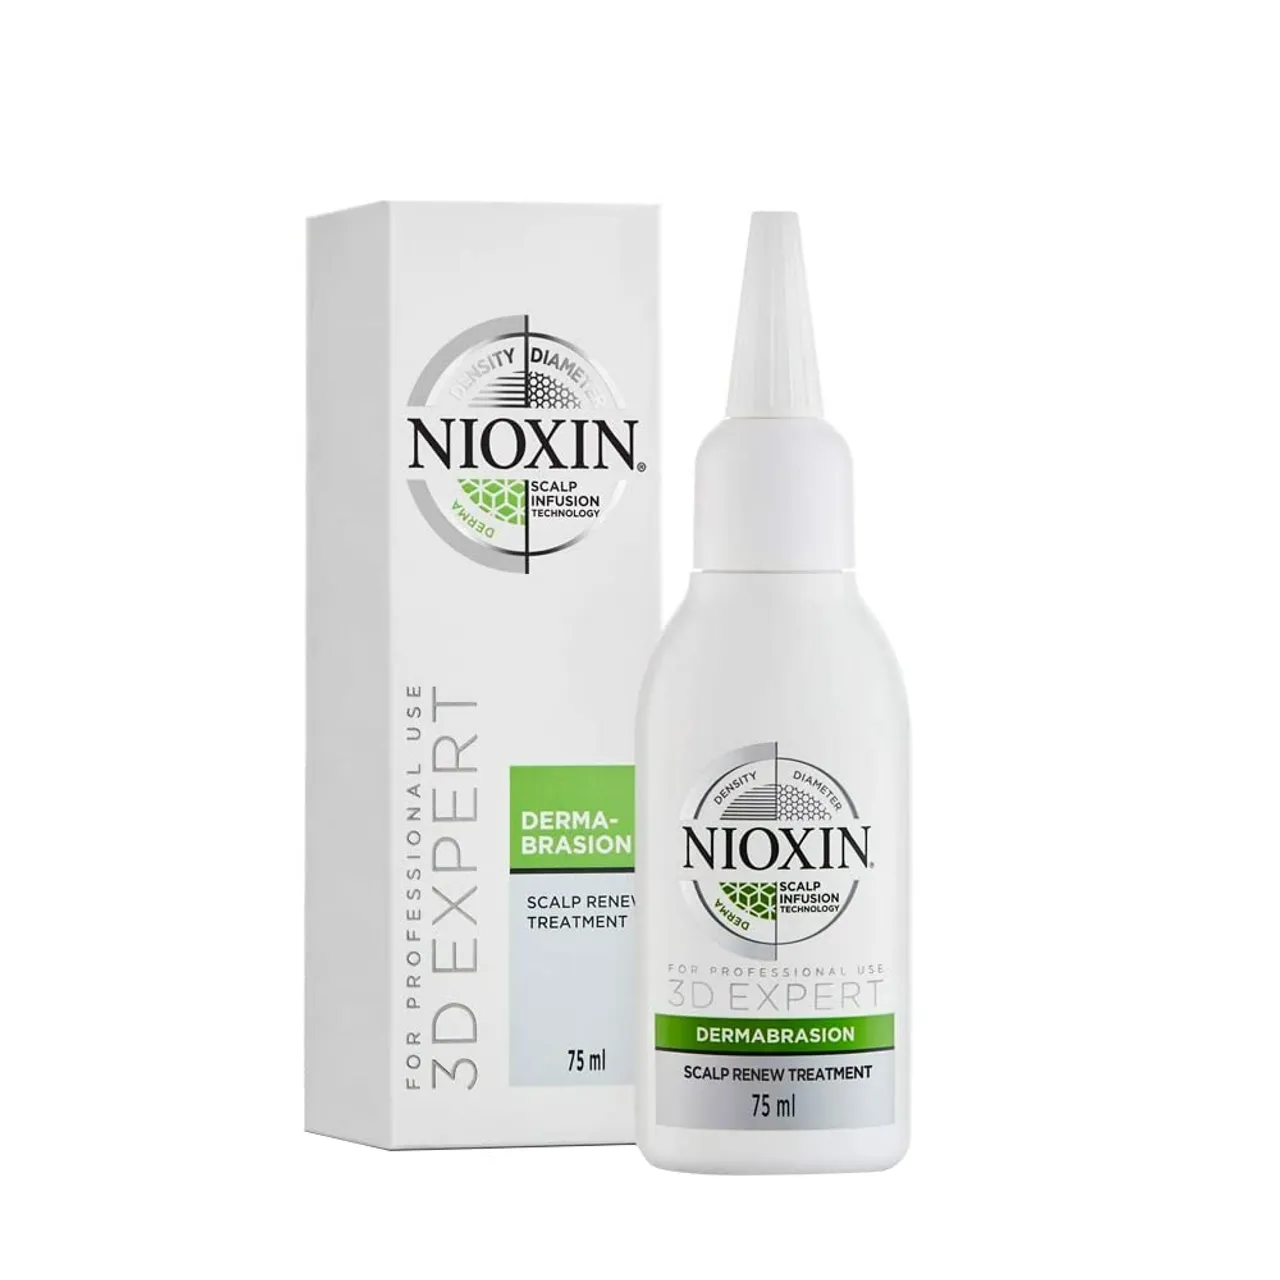 NIOXIN 3D Expert Dermabrasion (75 ml) – belebendes